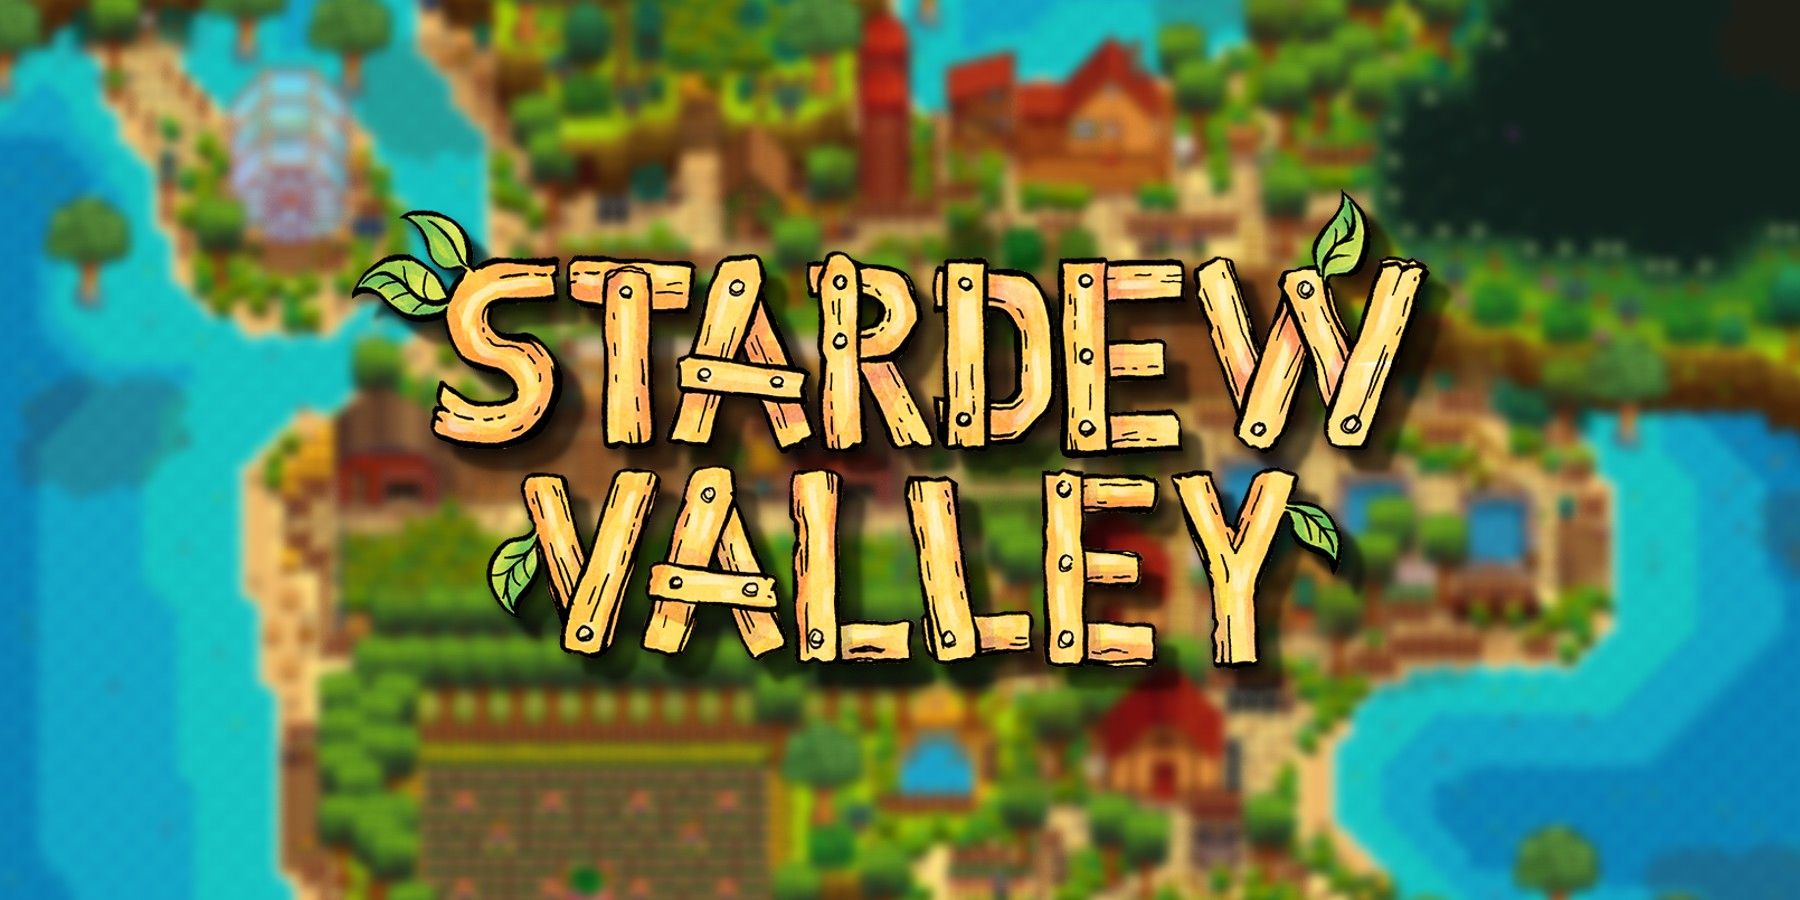 stardew-valley-logo-beach-farm-blurred-background